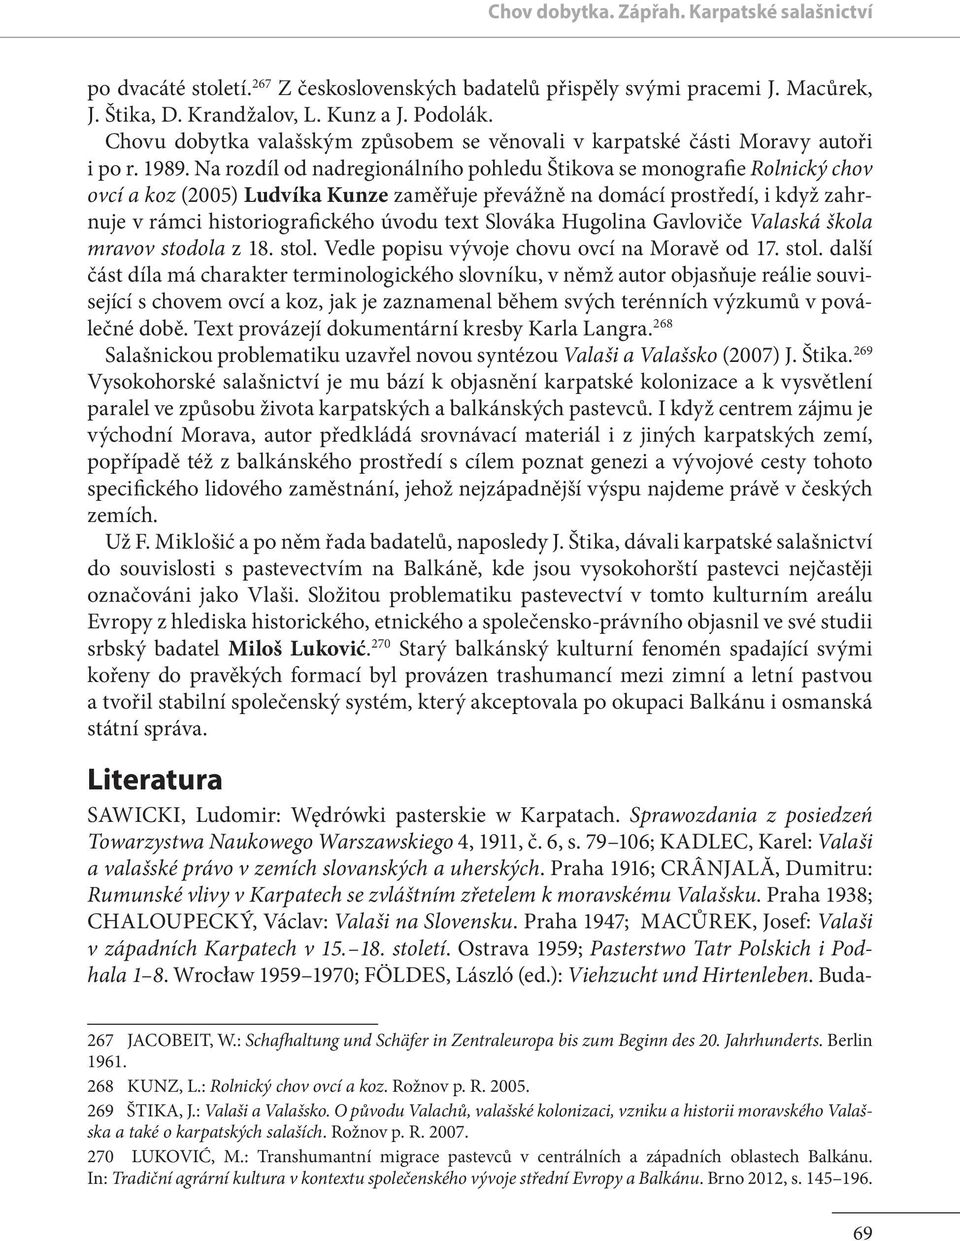 Na rozdíl od nadregionálního pohledu Štikova se monografie Rolnický chov ovcí a koz (2005) Ludvíka Kunze zaměřuje převážně na domácí prostředí, i když zahrnuje v rámci historiografického úvodu text